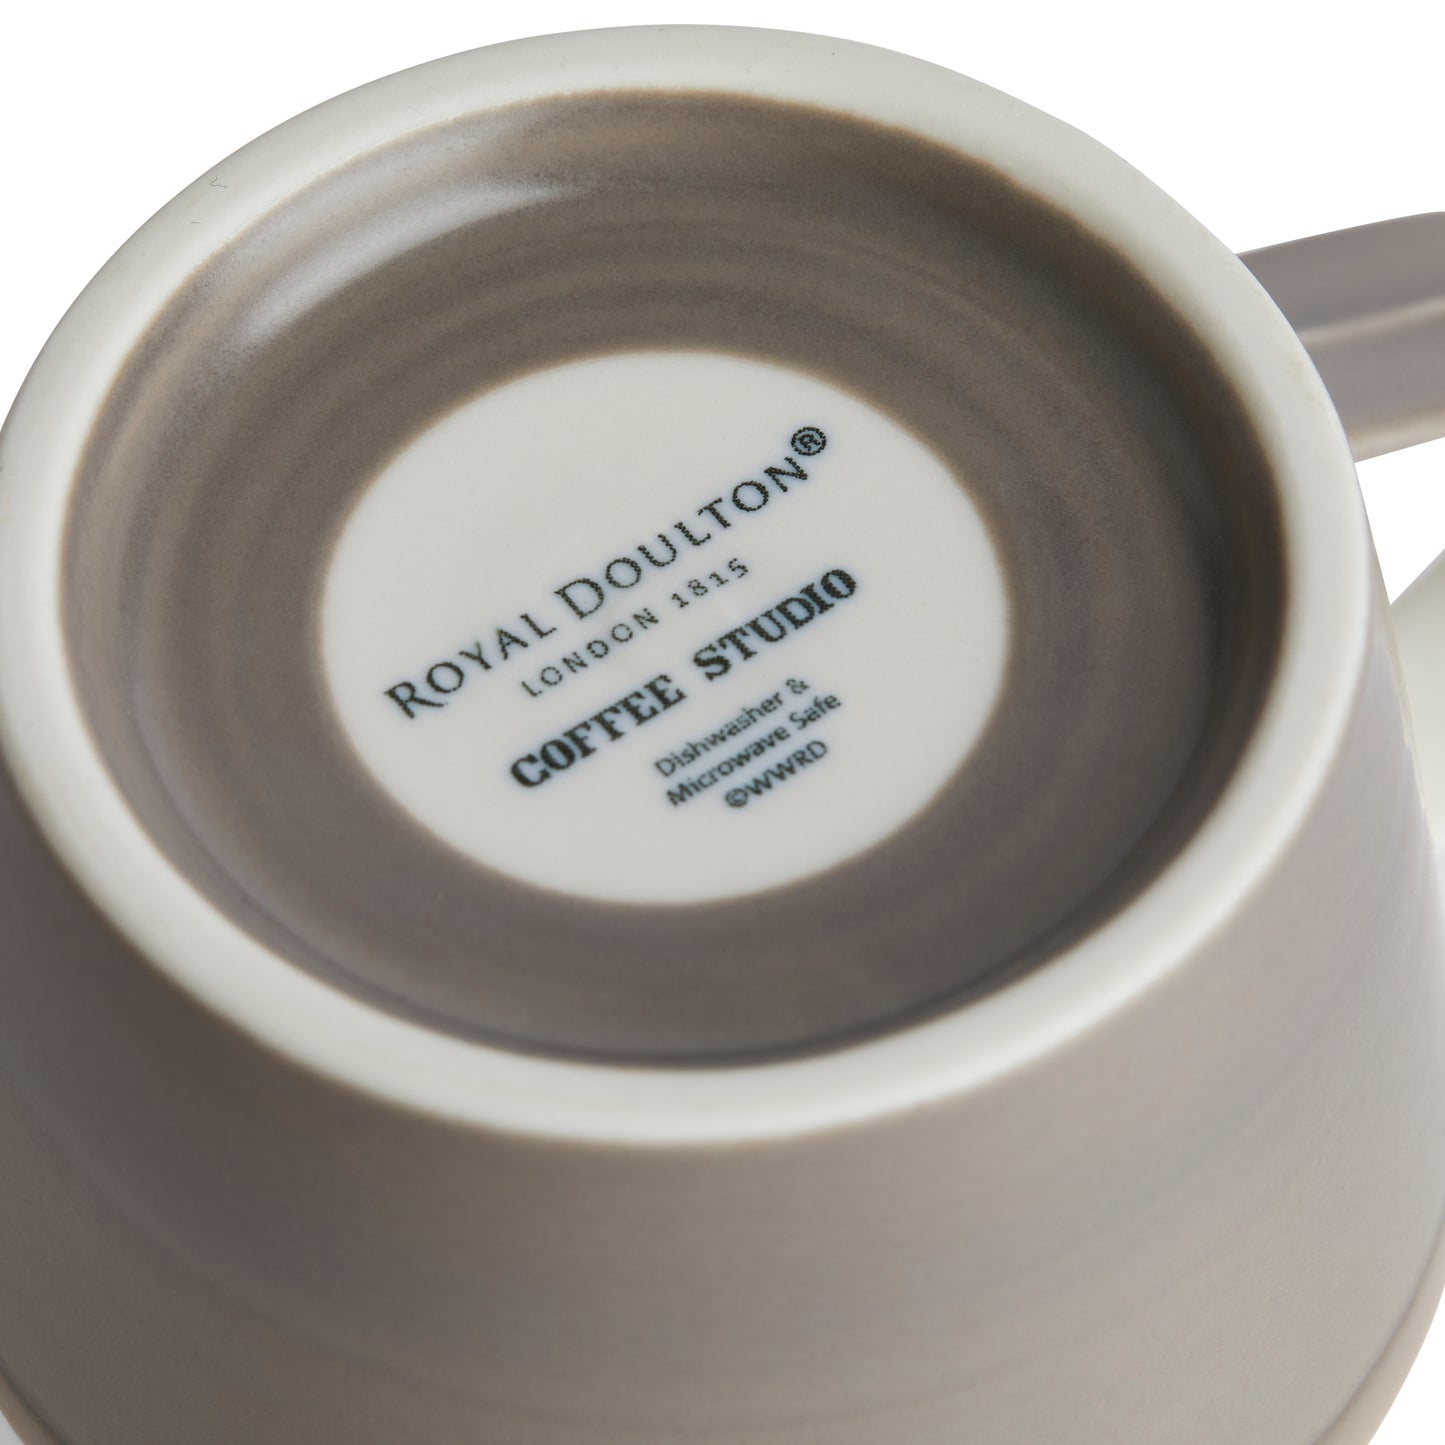 Royal Doulton 1815 Coffee Studio Mug Small (Set of 4)